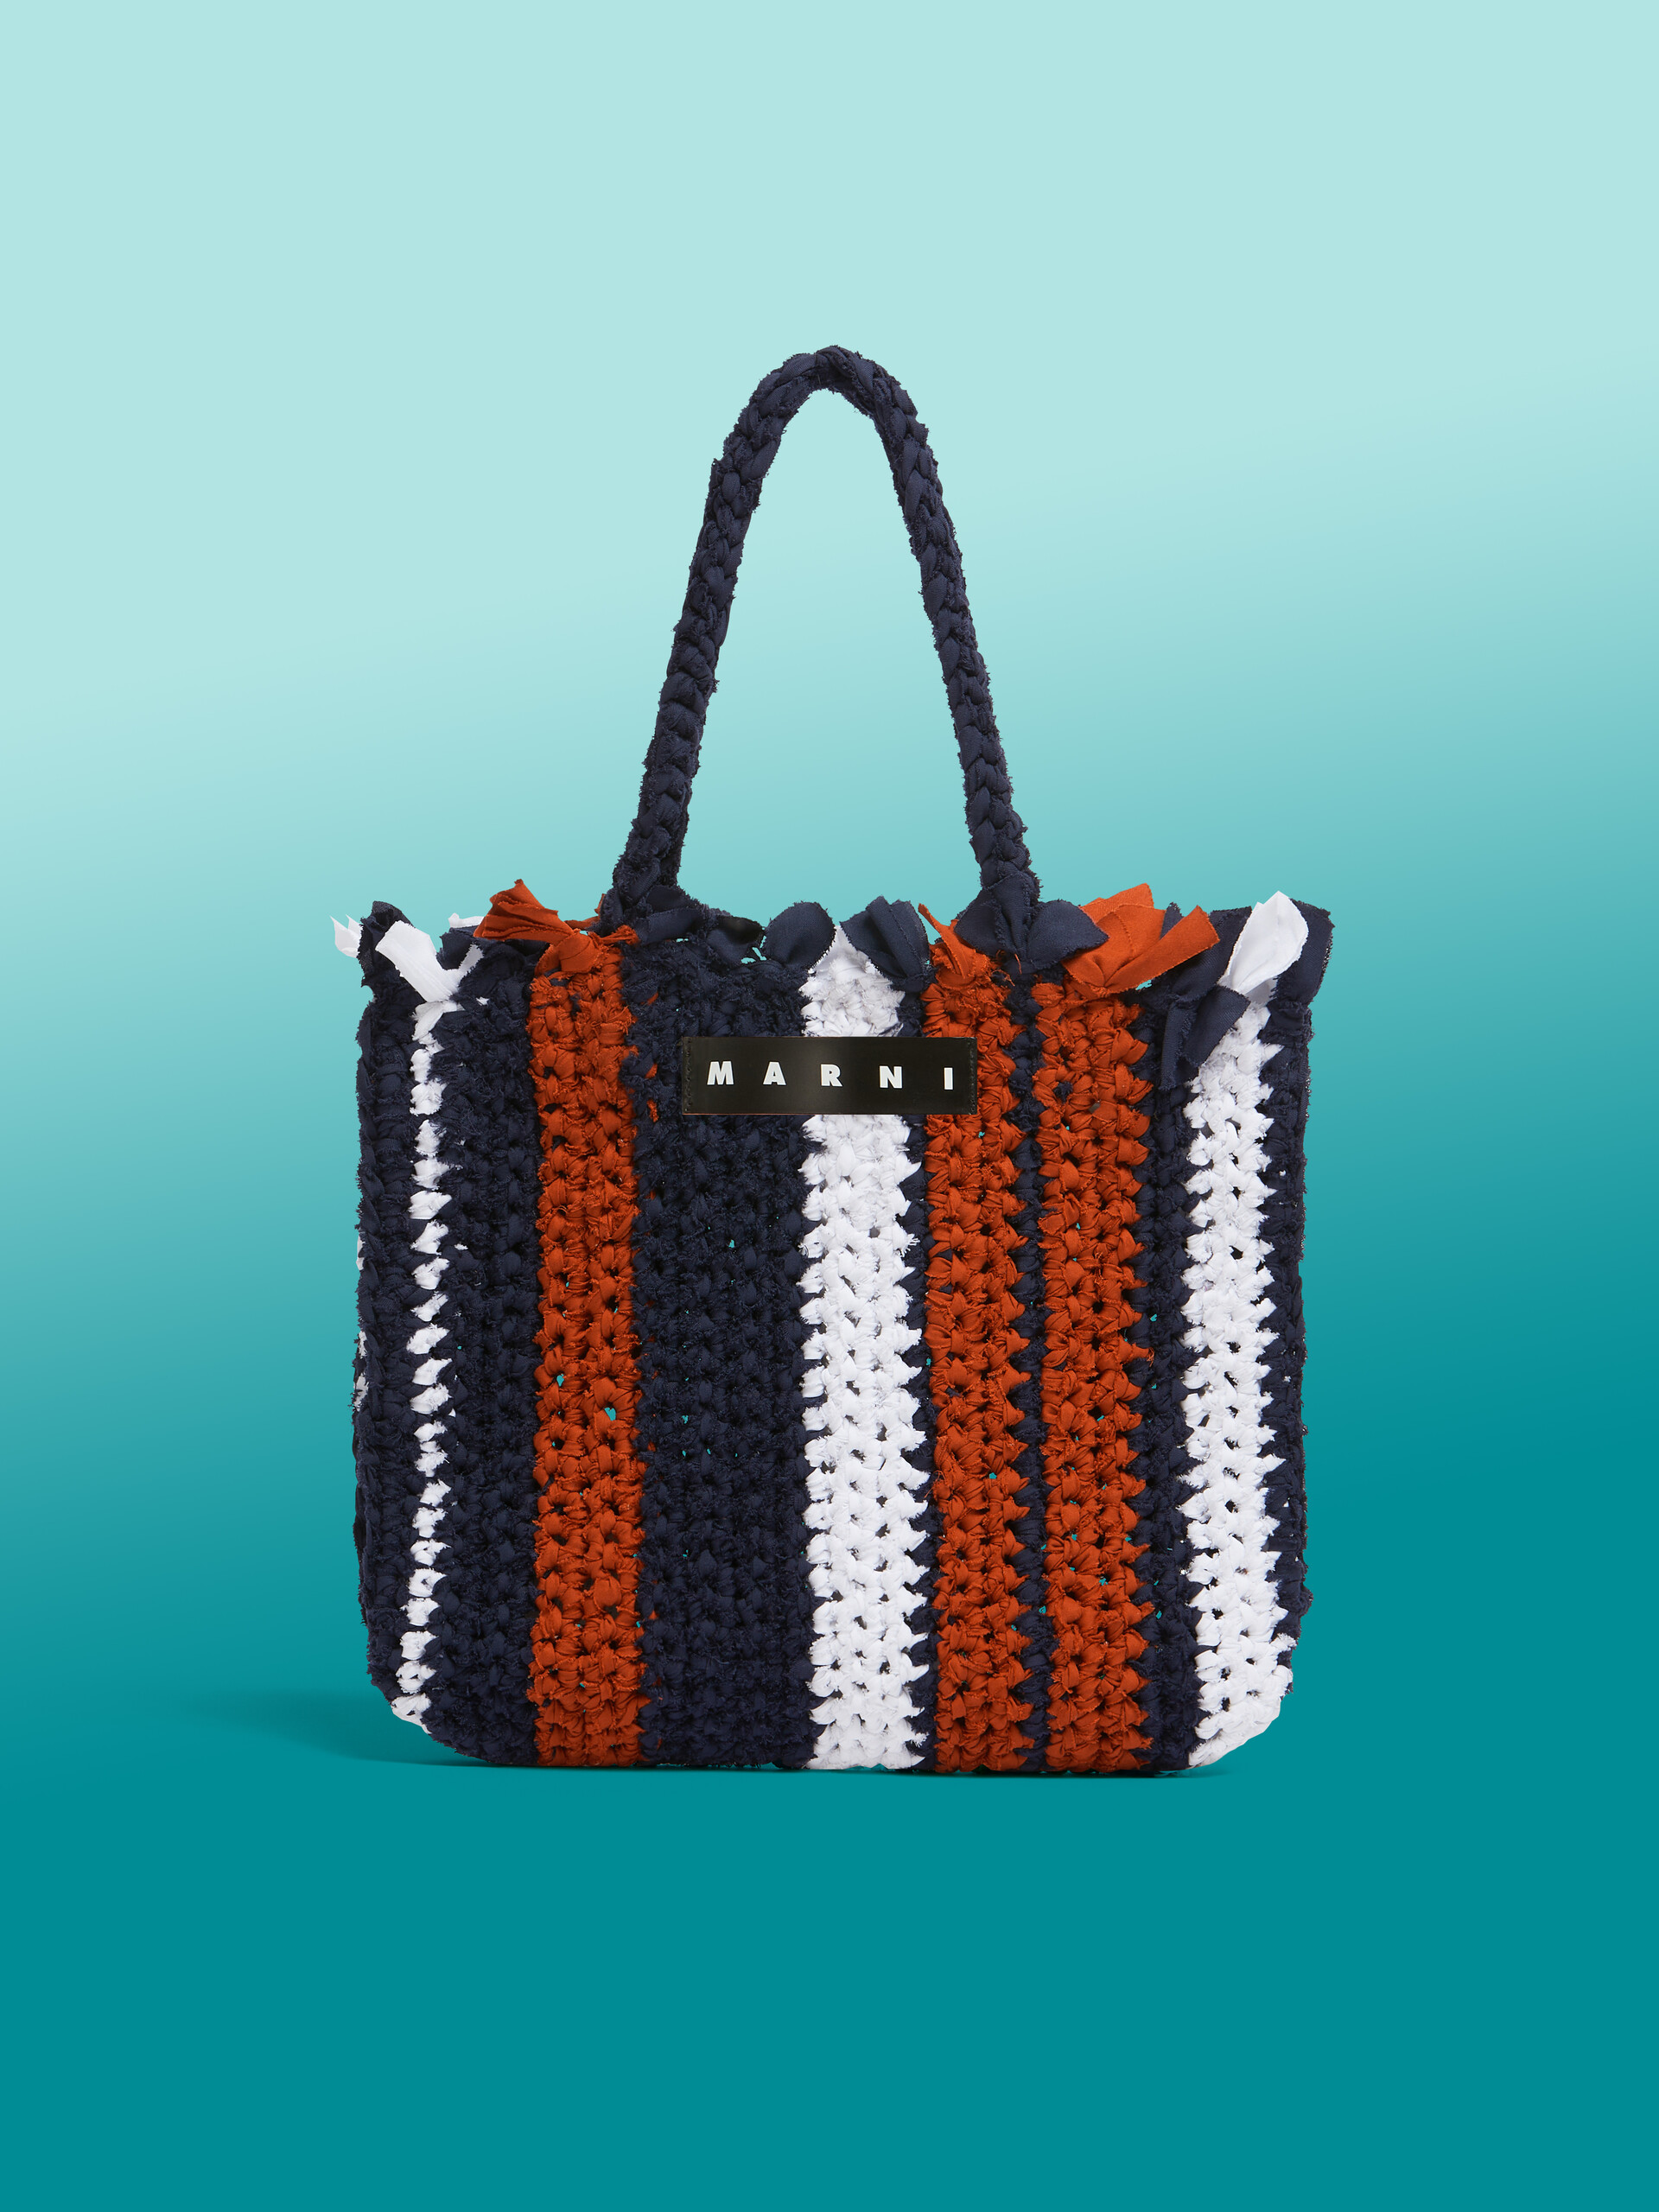 MARNI MARKET JERSEY Tasche aus Baumwolle in Rosa und Blau - Shopper - Image 1